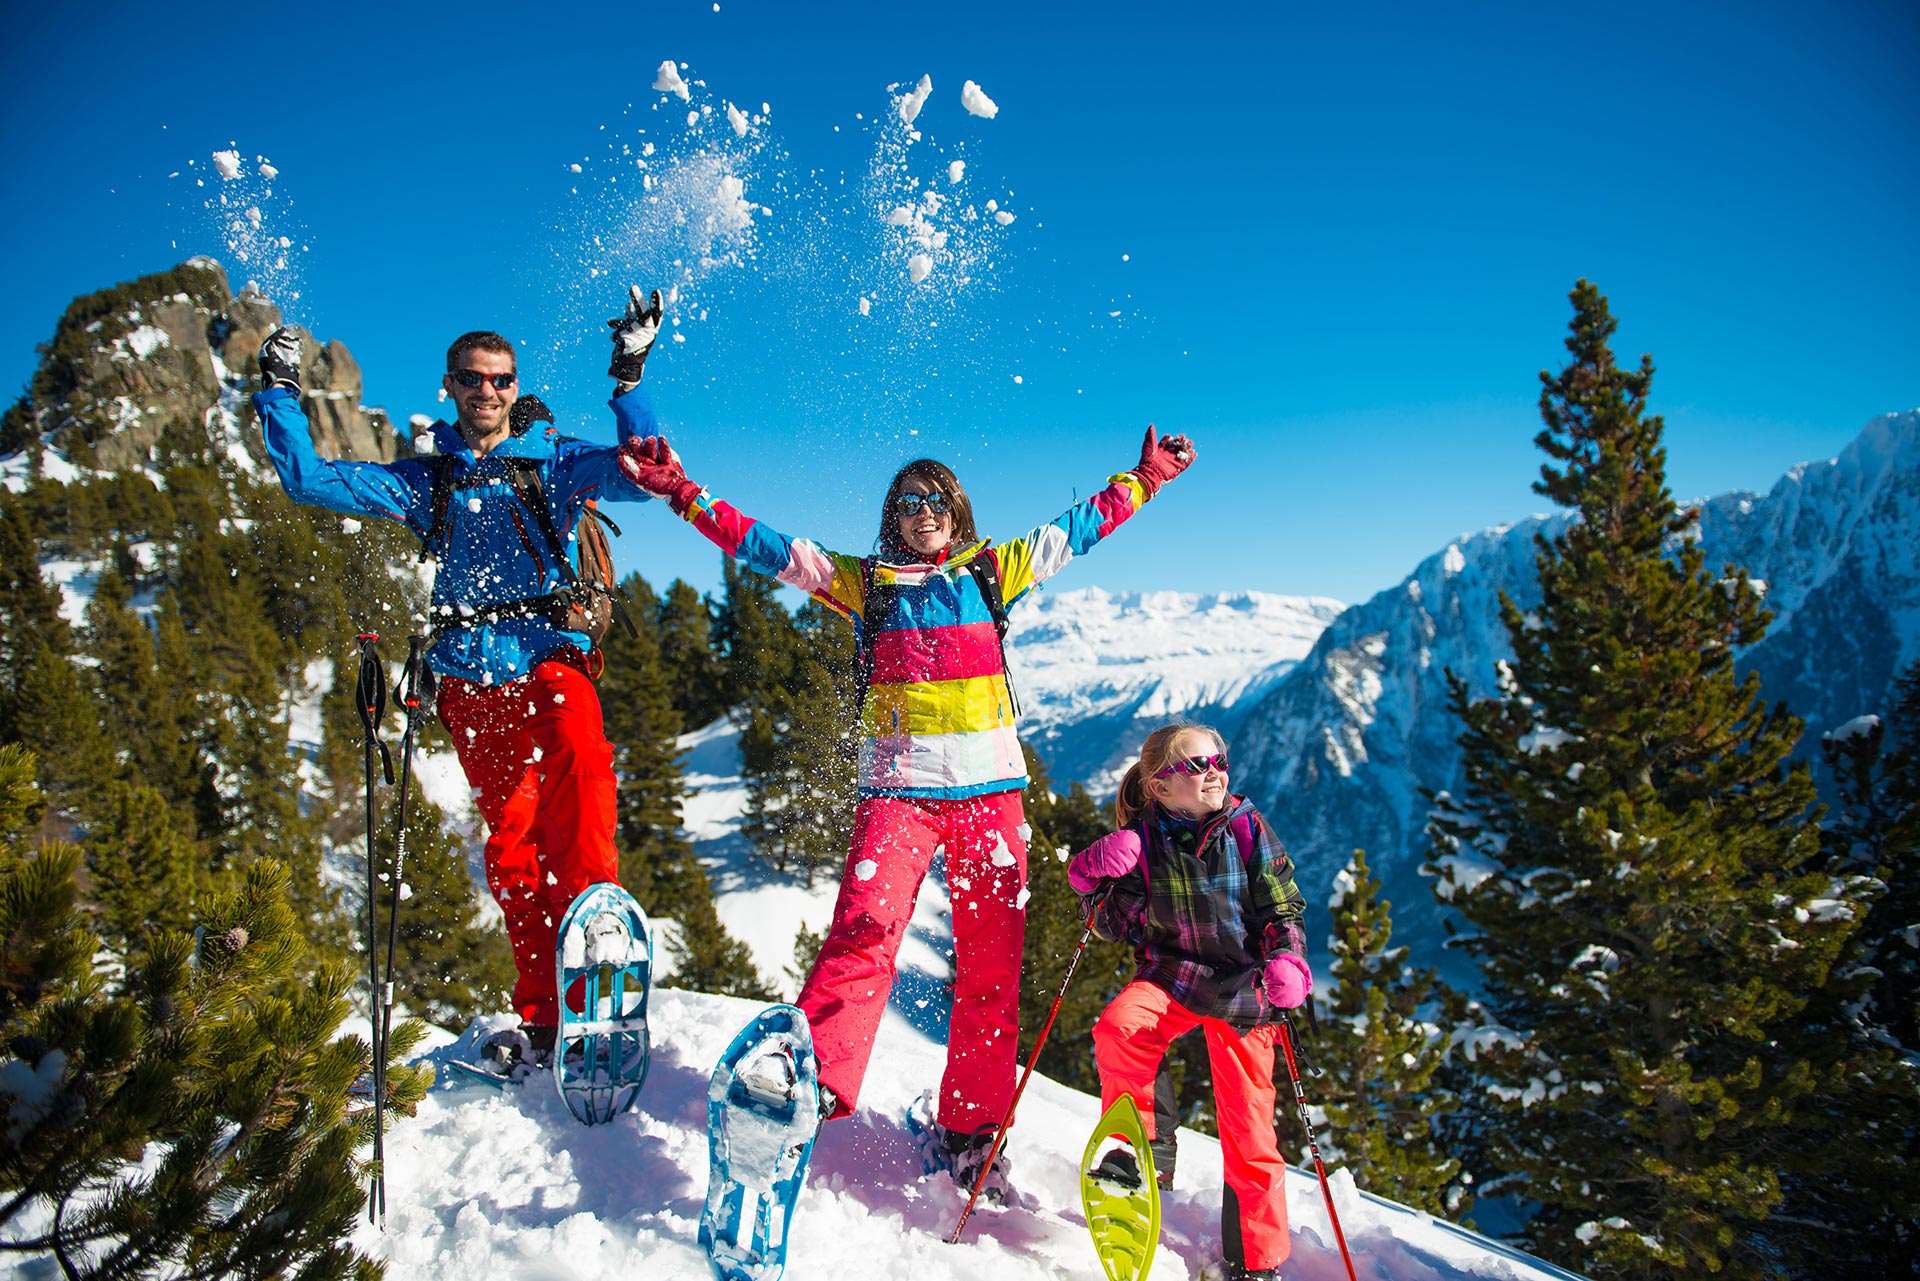 Chamrousse activité famille vacances hiver station montagne ski grenoble isère alpes france - © Images-et-reves.fr